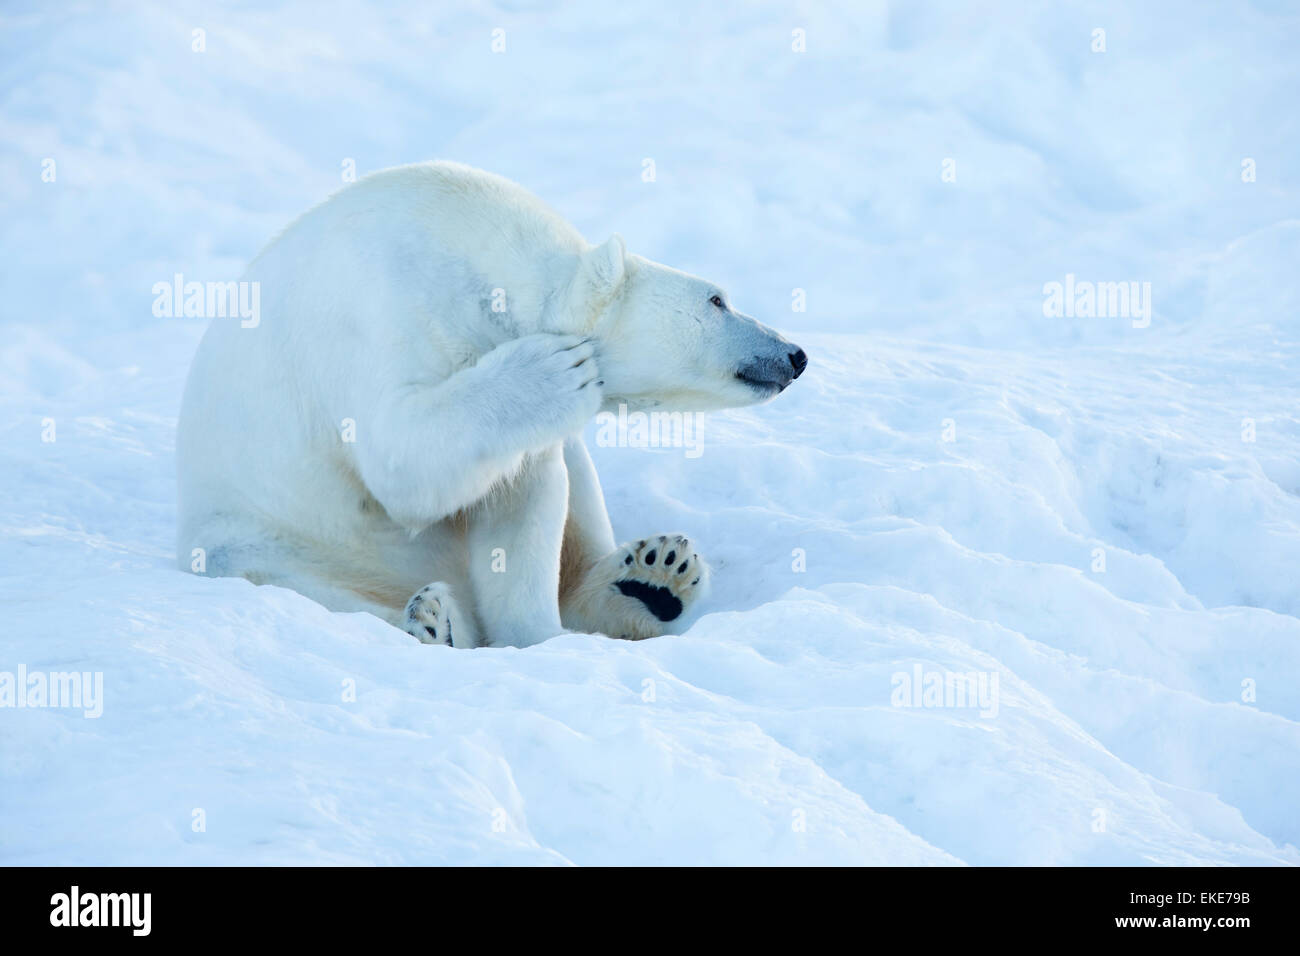 El oso polar (Ursus maritimus) rascado y limpieza en la nieve Foto de stock